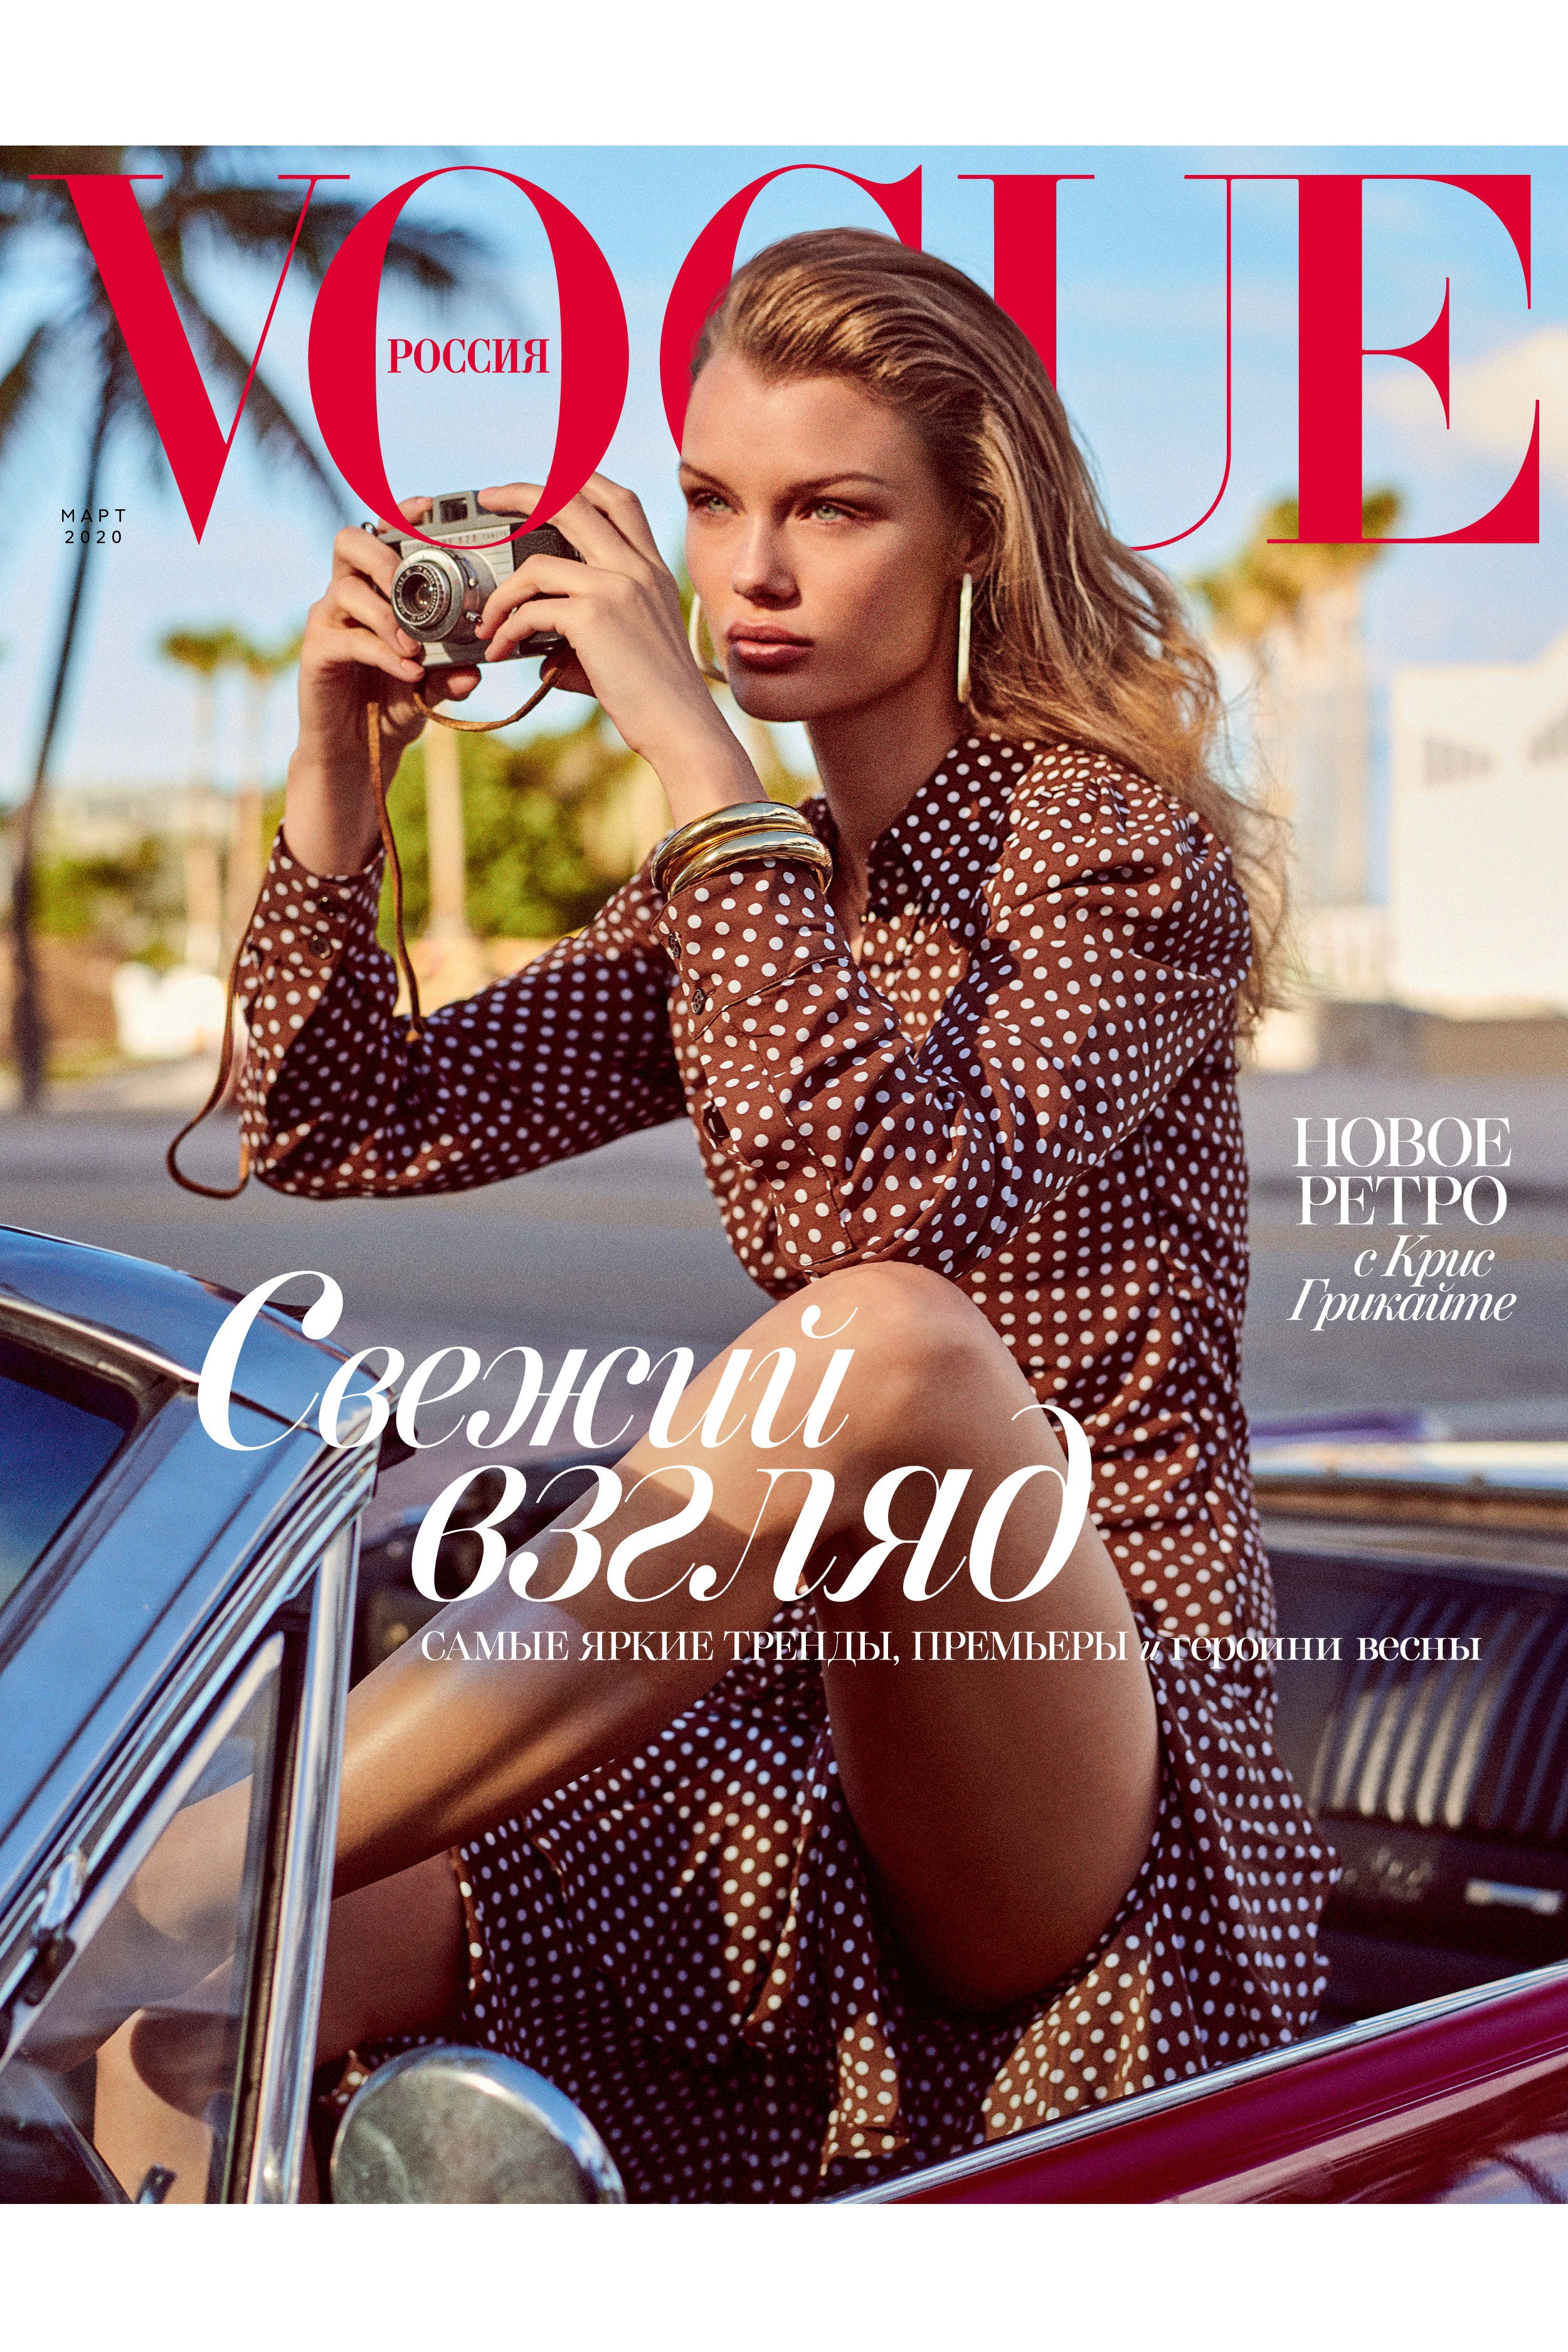 Маша Федорова о мартовском номере Vogue